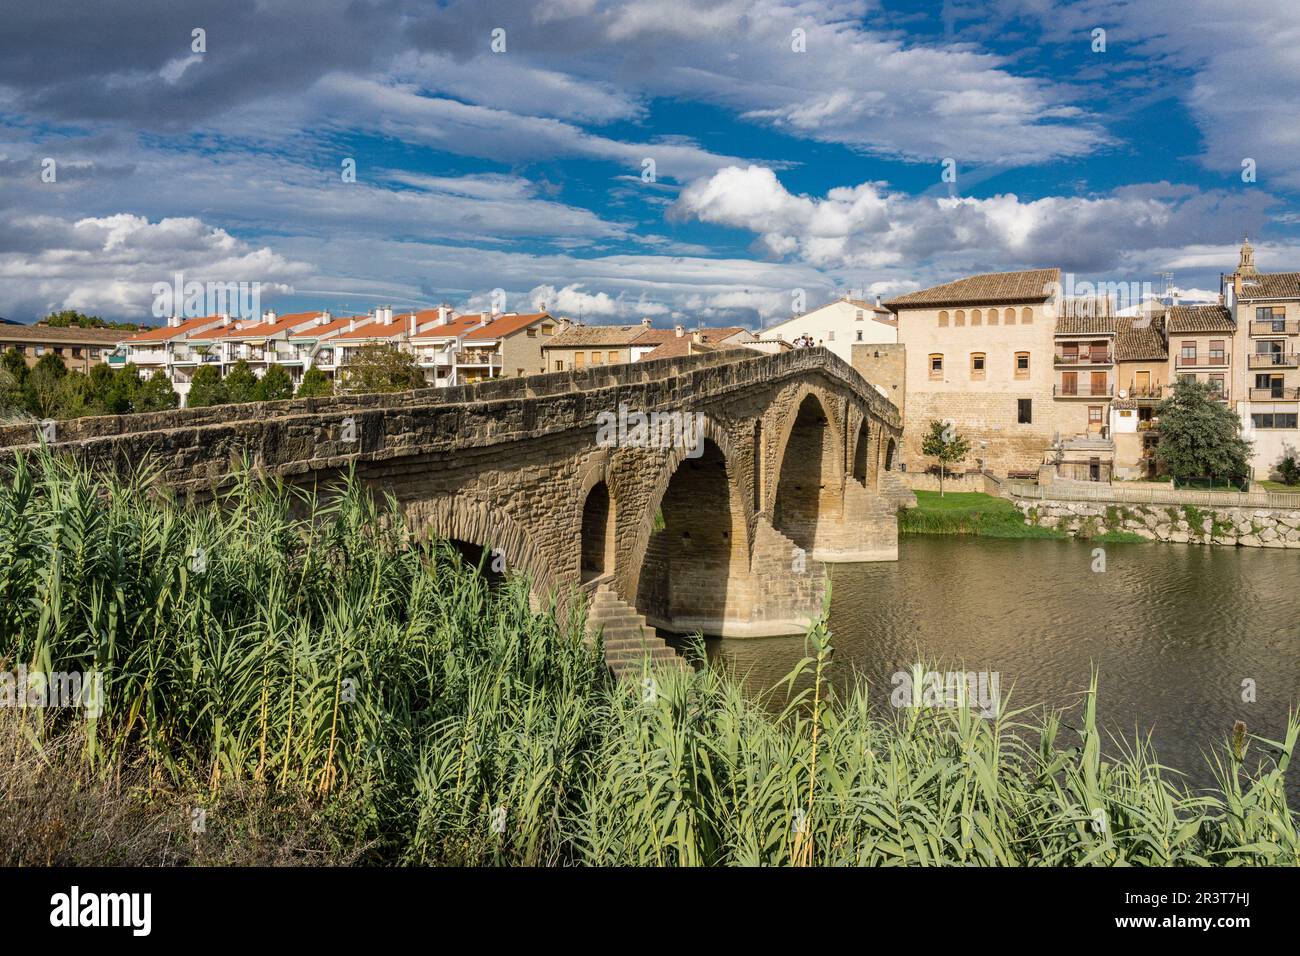 puente románico sobre el río Arga, siglo XI, Puente la Reina, valle de Valdizarbe ,comunidad foral de Navarra, Spain. Stock Photo